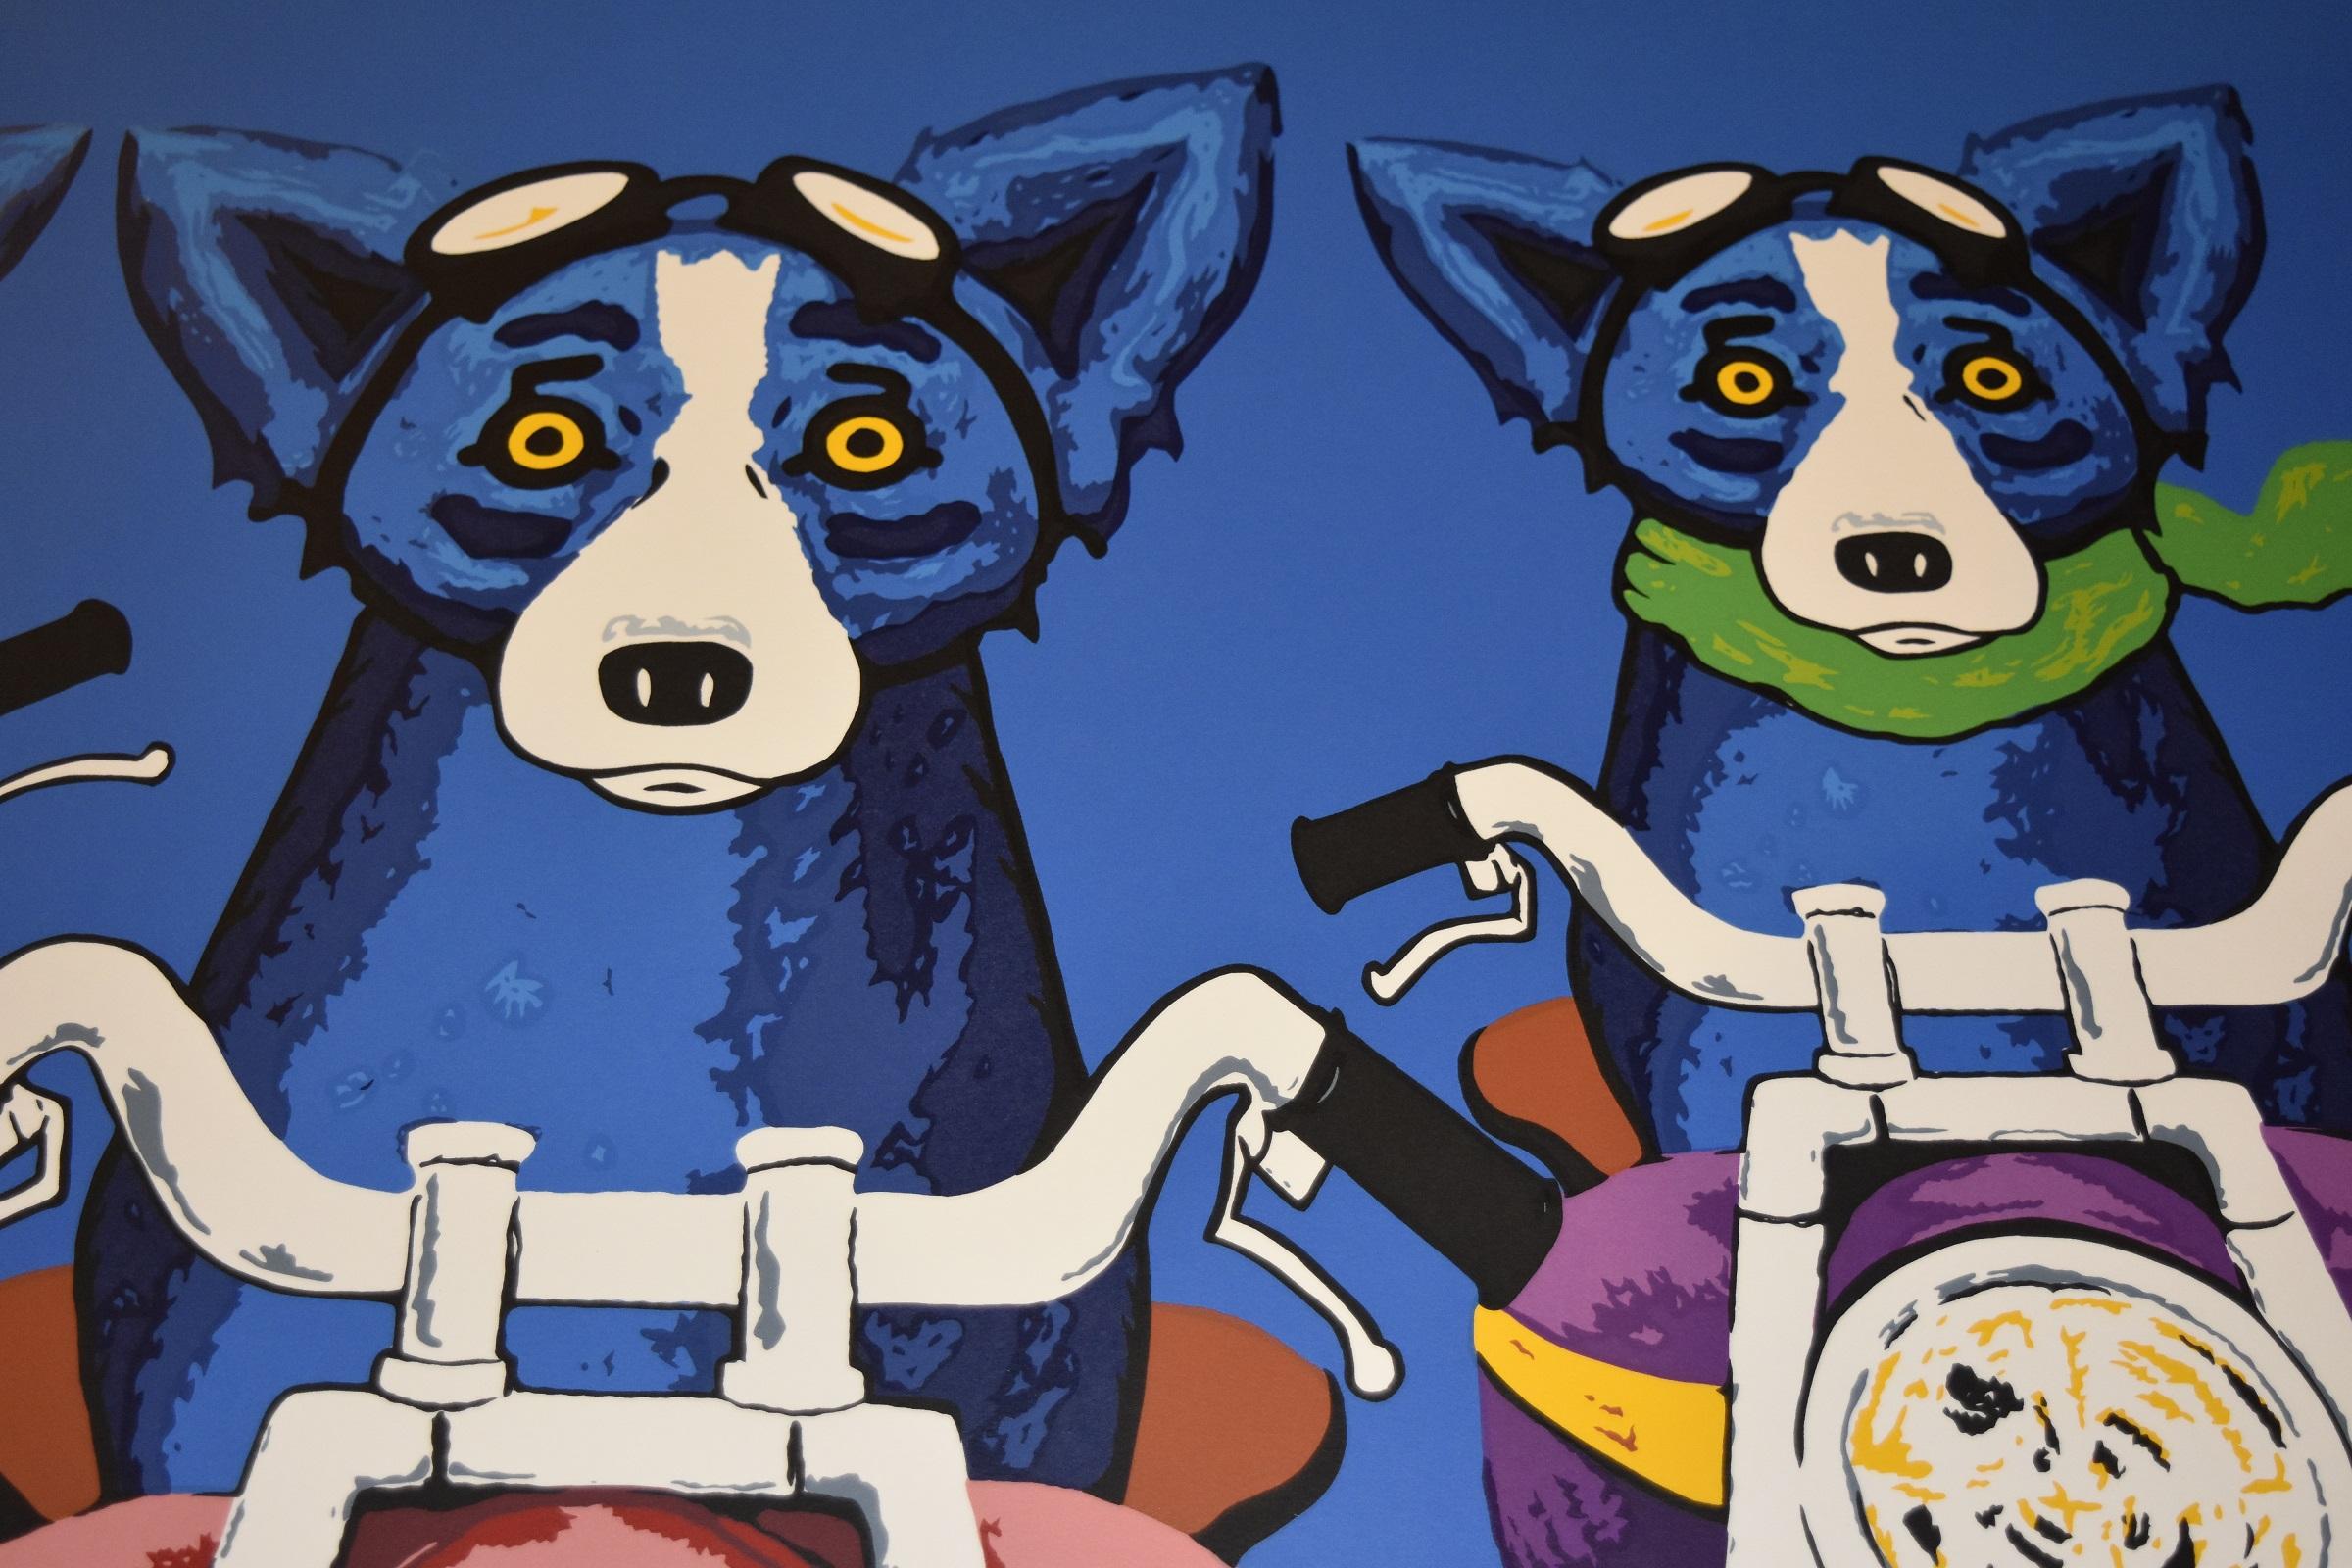 Cette œuvre Blue Dog se compose de 4 chiens chevauchant des motos sur un fond bleu. Trois des 4 chiens portent des foulards de couleurs différentes (jaune, rouge, vert). Un chien n'a pas de foulard. Tous les chiens sont sur des motos de couleurs